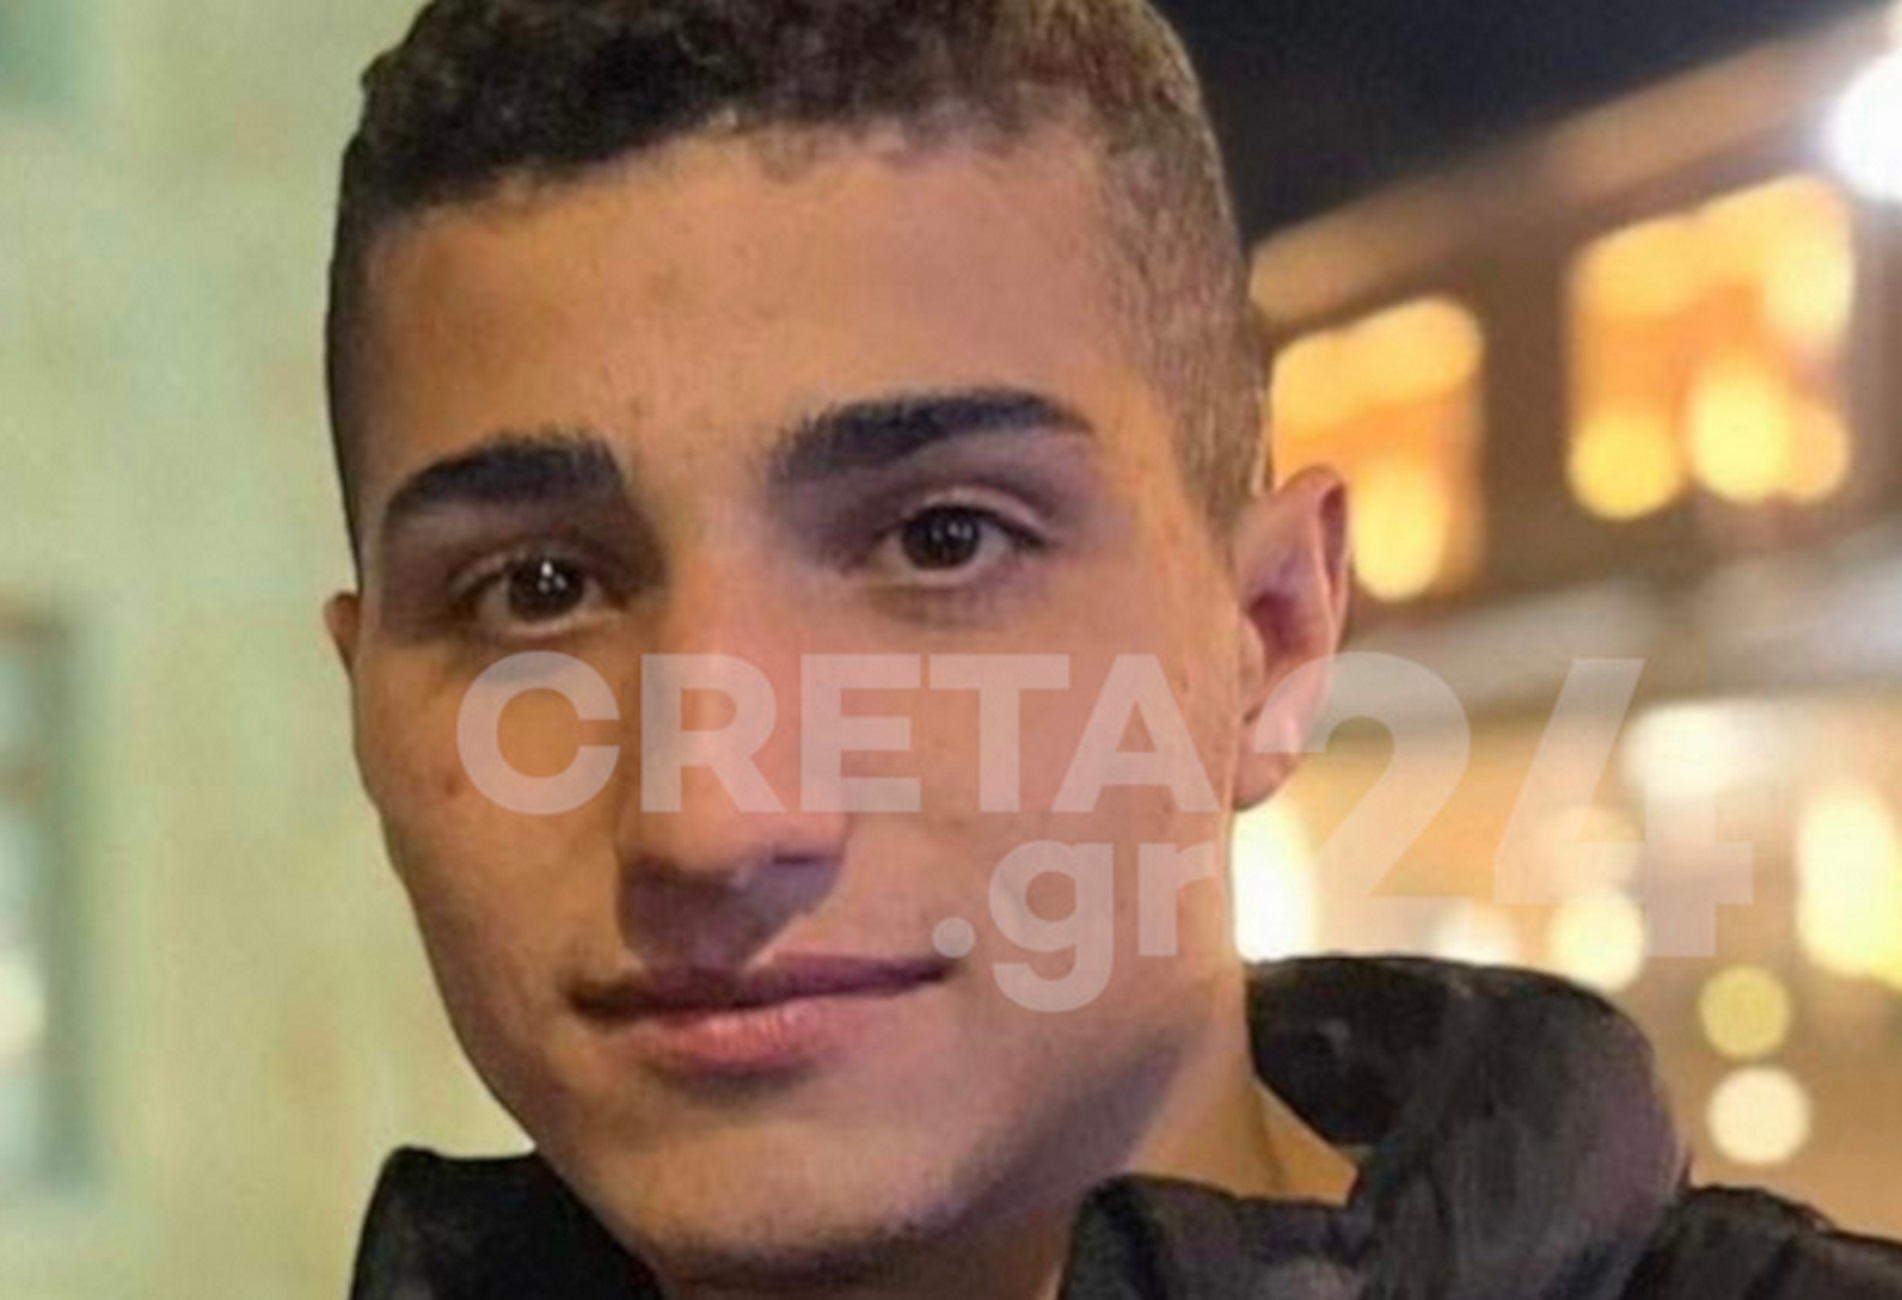 Χανιά: Σκοτώθηκε 18χρονος και χαροπαλεύουν δύο φίλοι του μετά από τροχαίο δυστύχημα